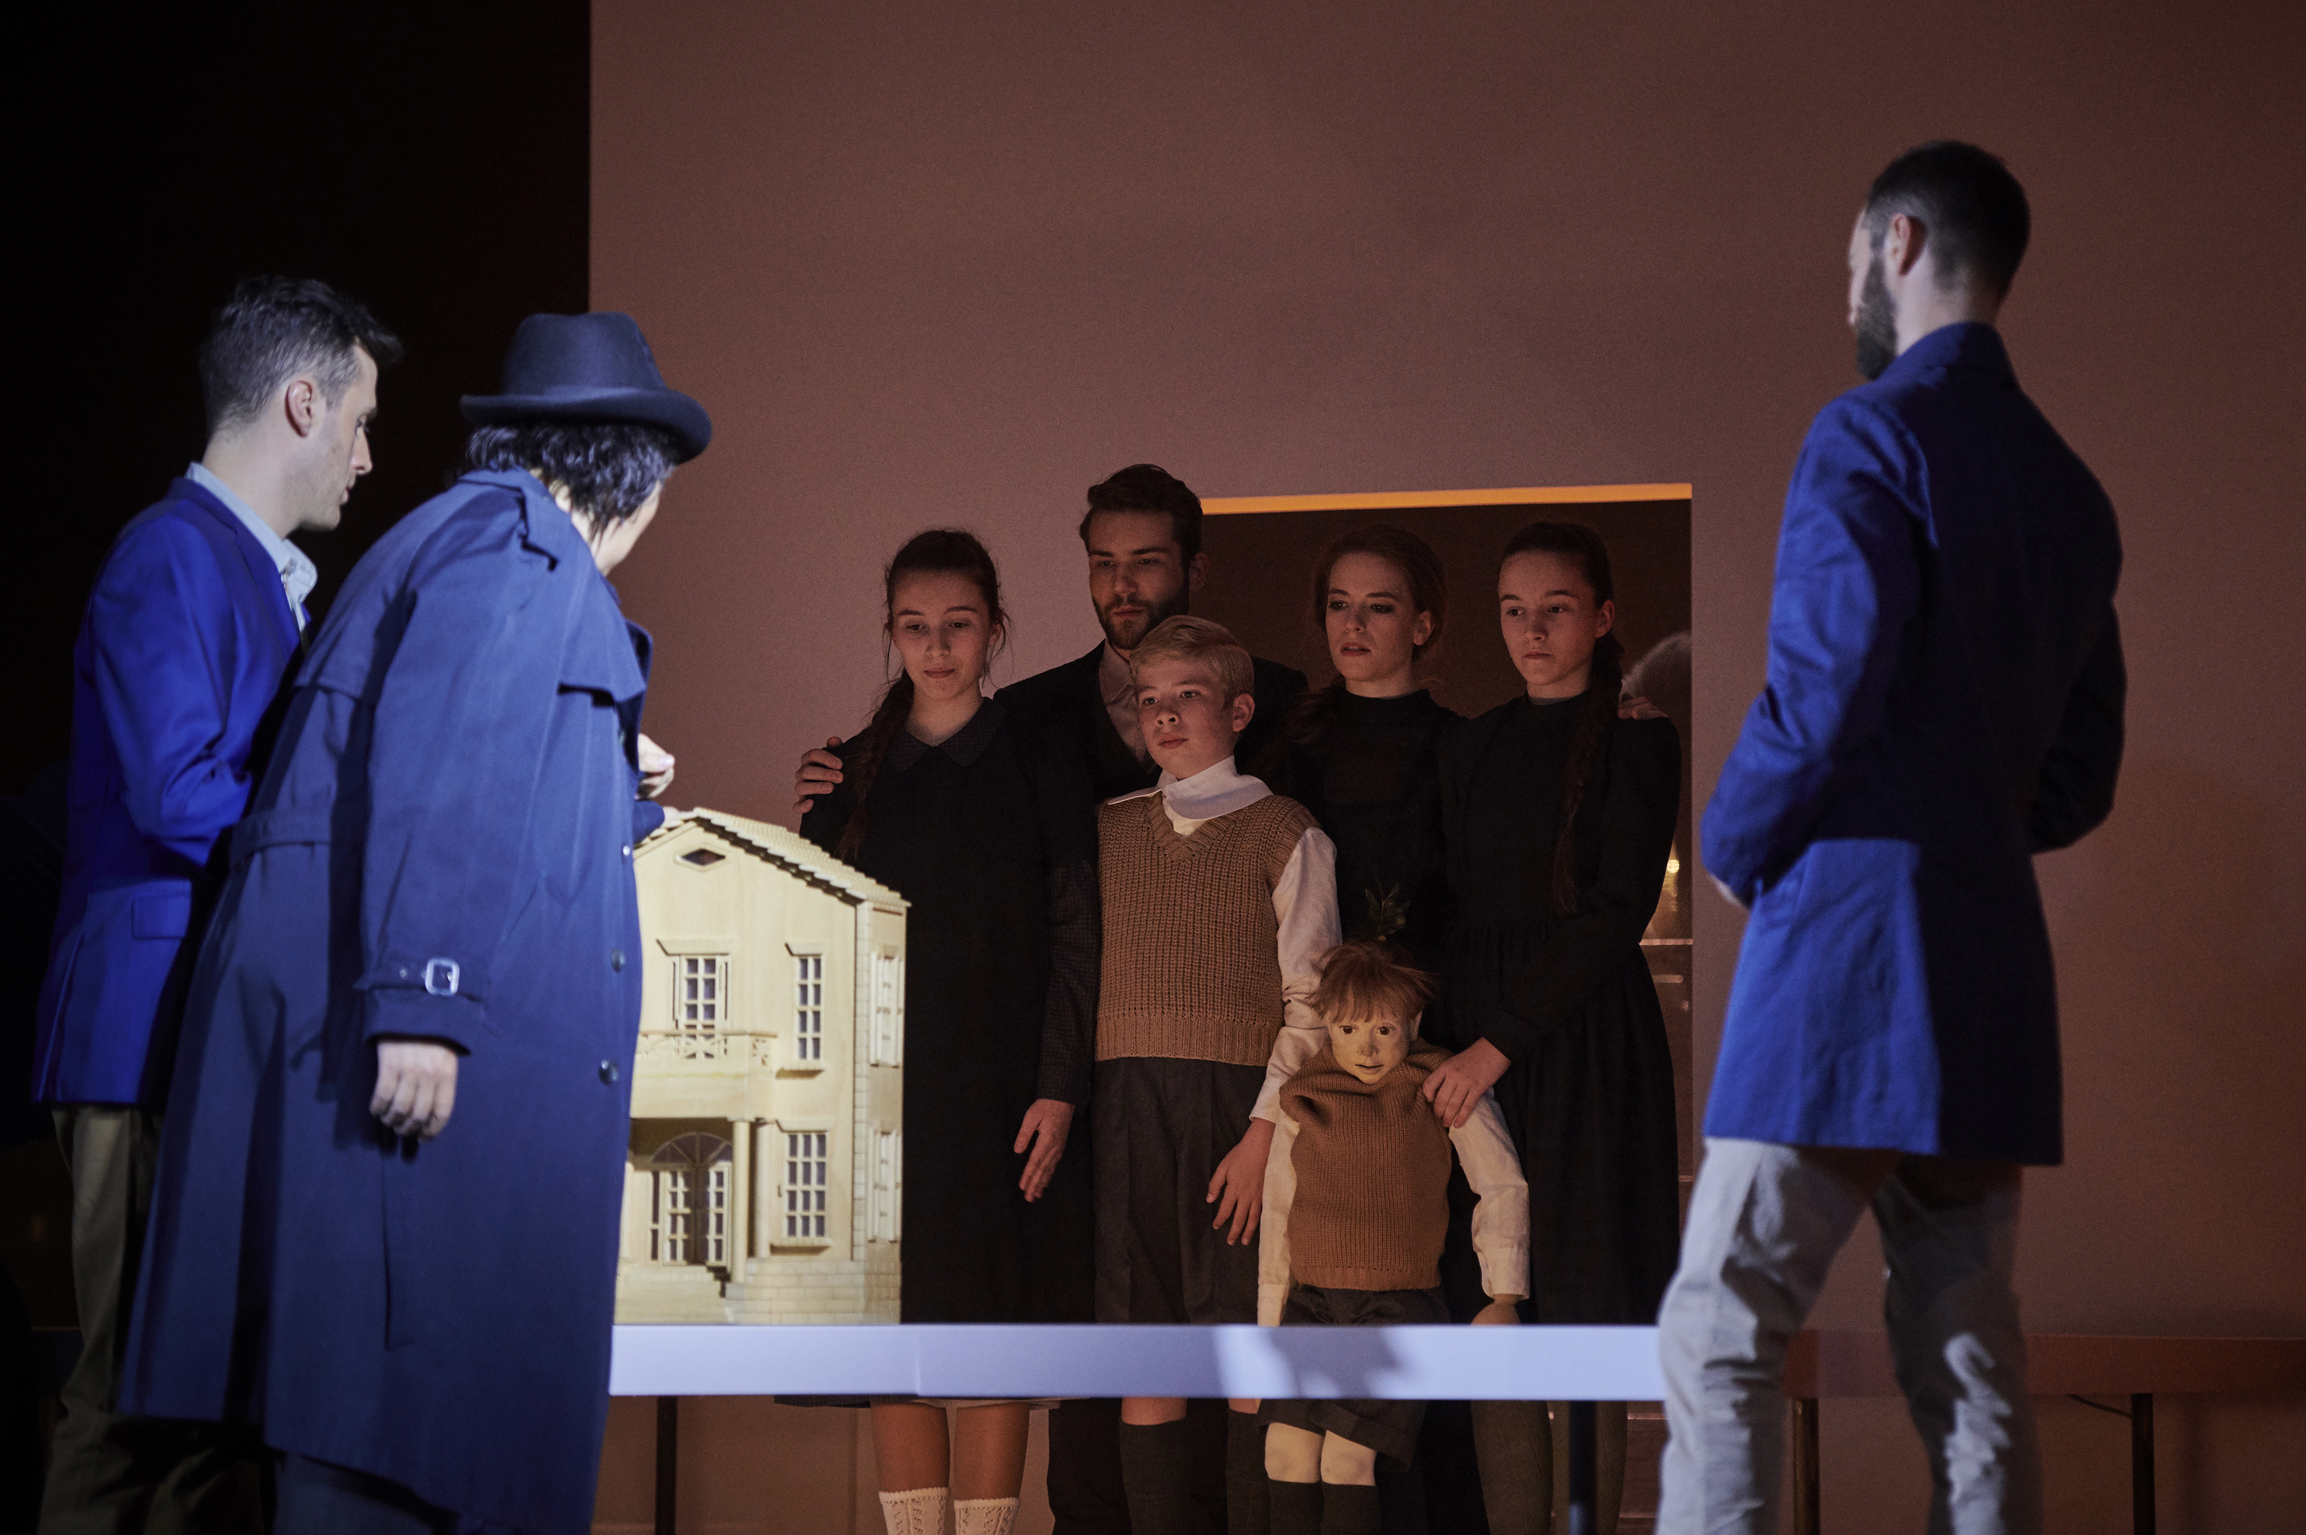 Eine Familienaufstellung? Ensembleszene aus "L'Invisible" am Staatstheater Braunschweig